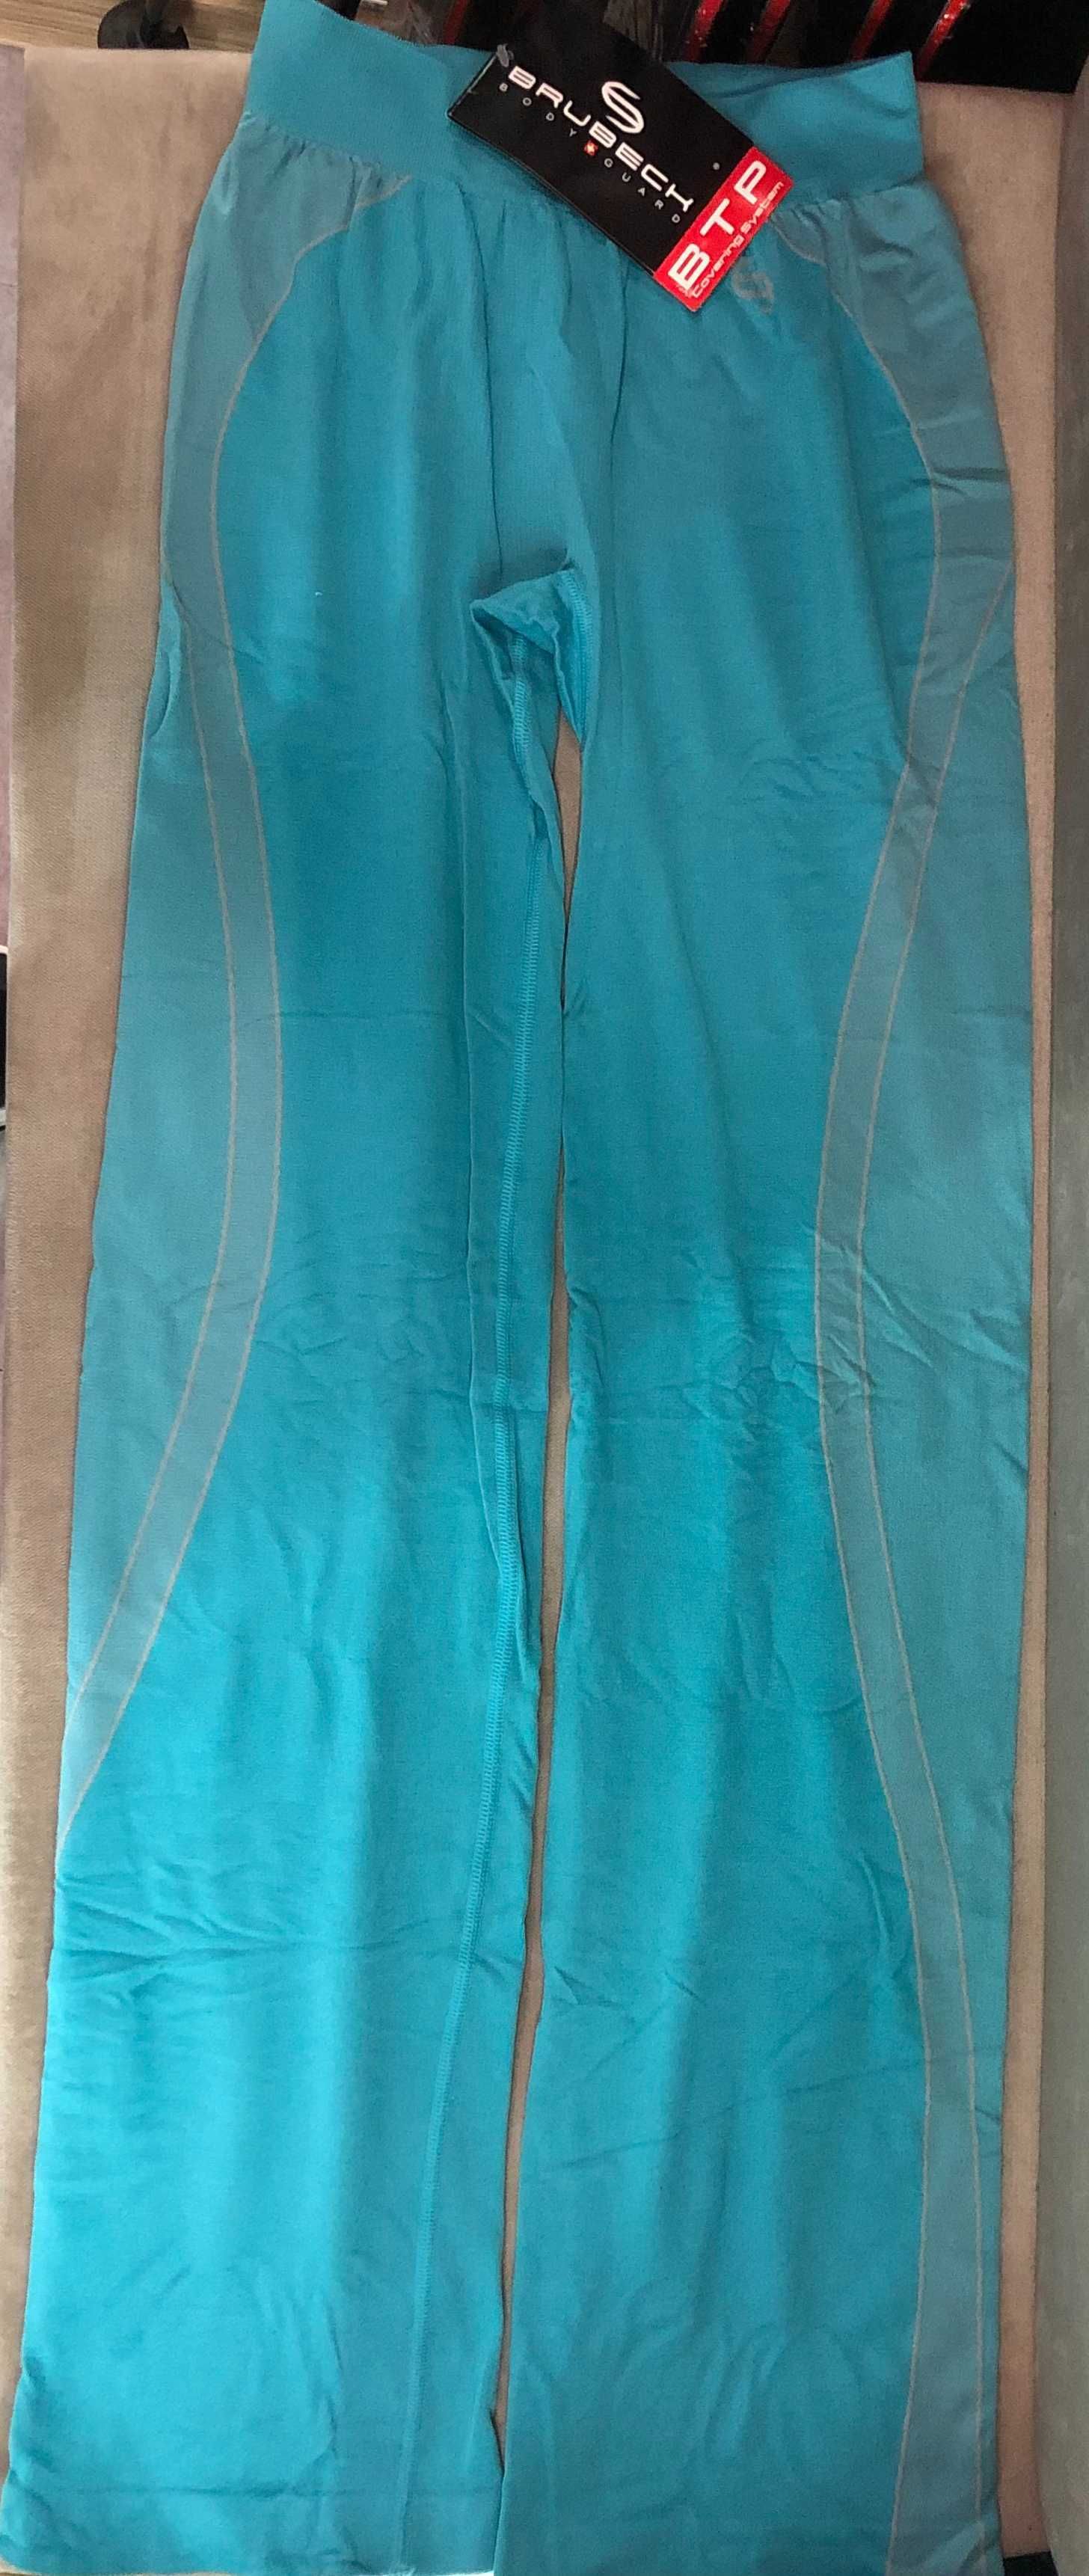 Spodnie damskie termoaktywne BRUBECK Fitness LE00700 niebieski S